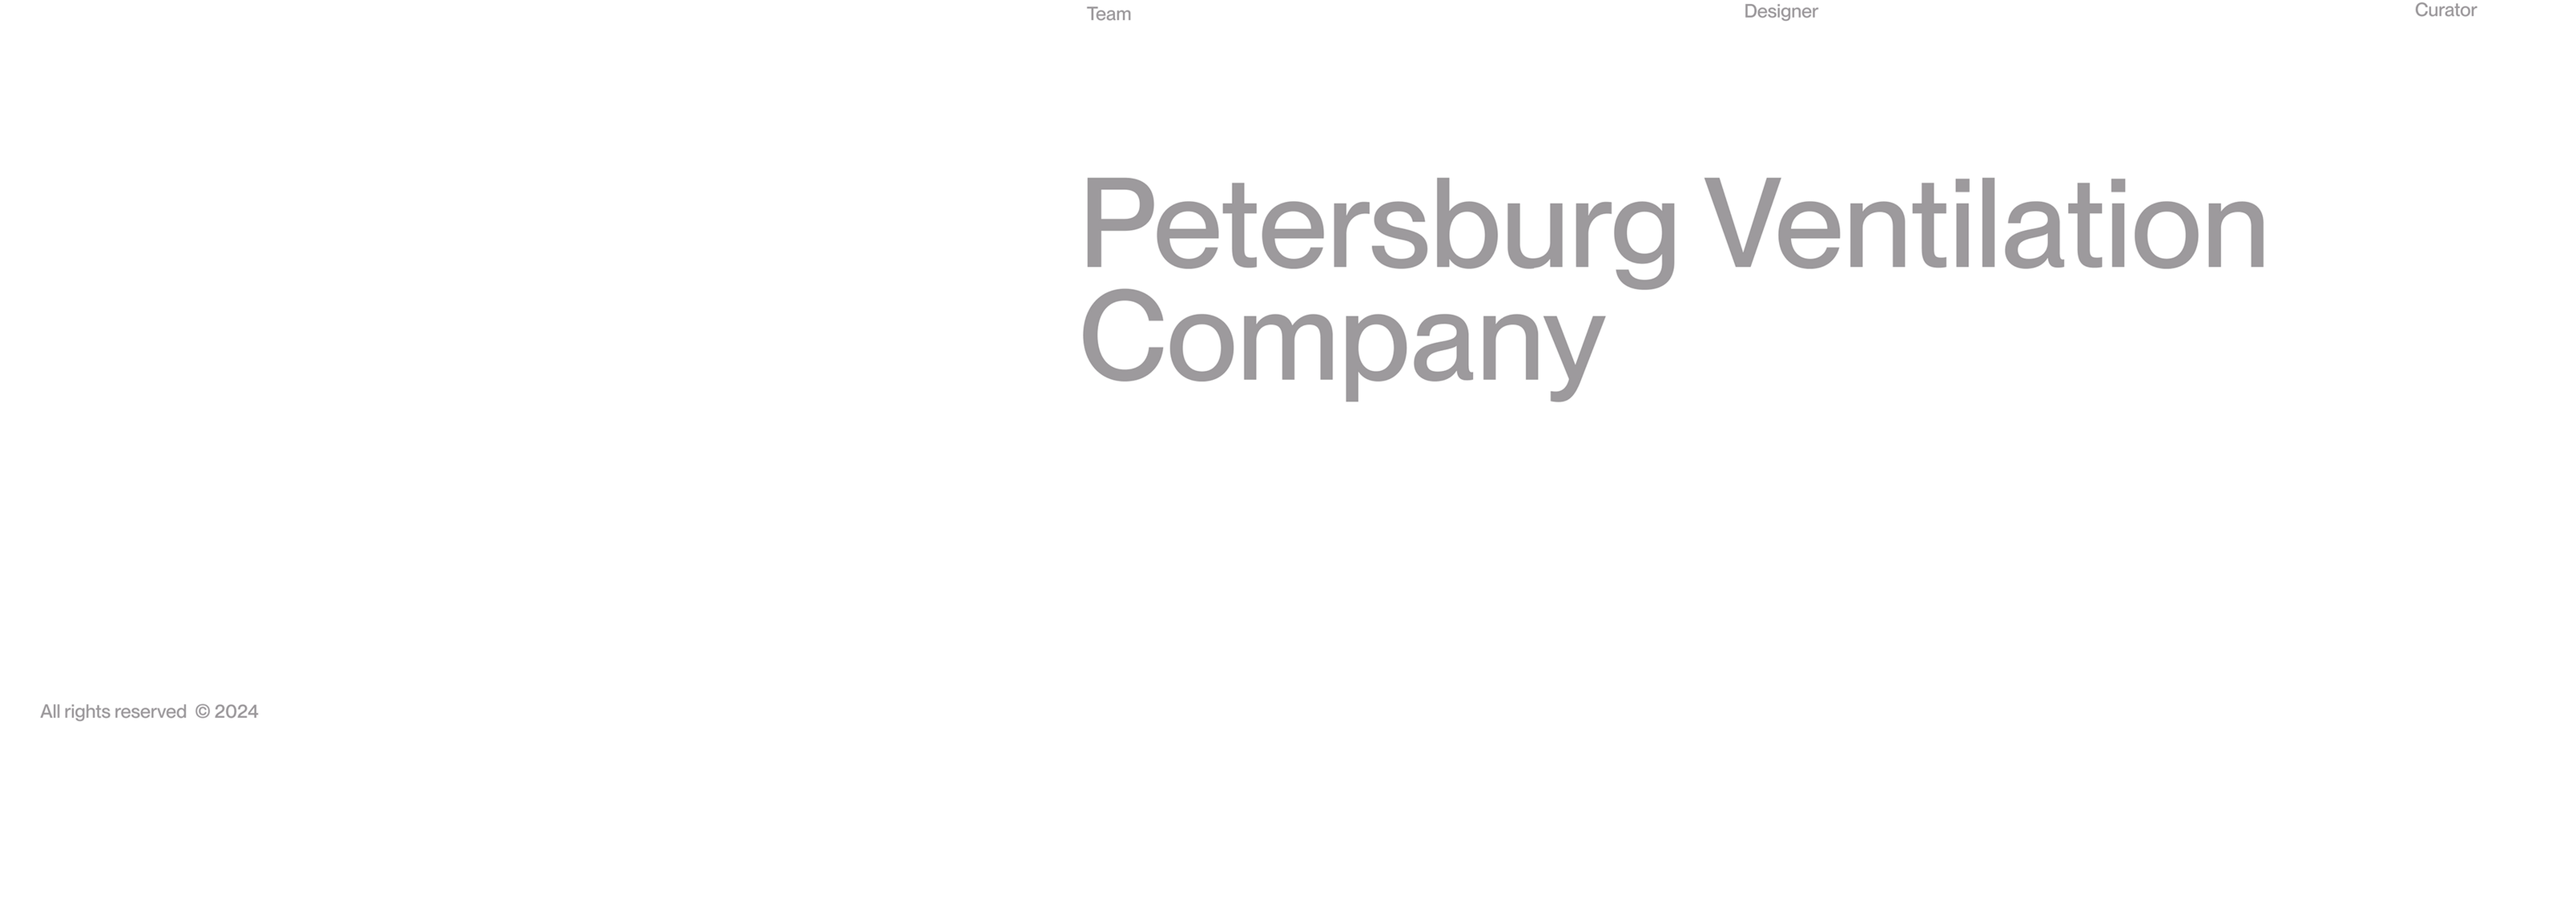 Petersburg Ventilation Company — Изображение №1 — Интерфейсы, 3D на Dprofile